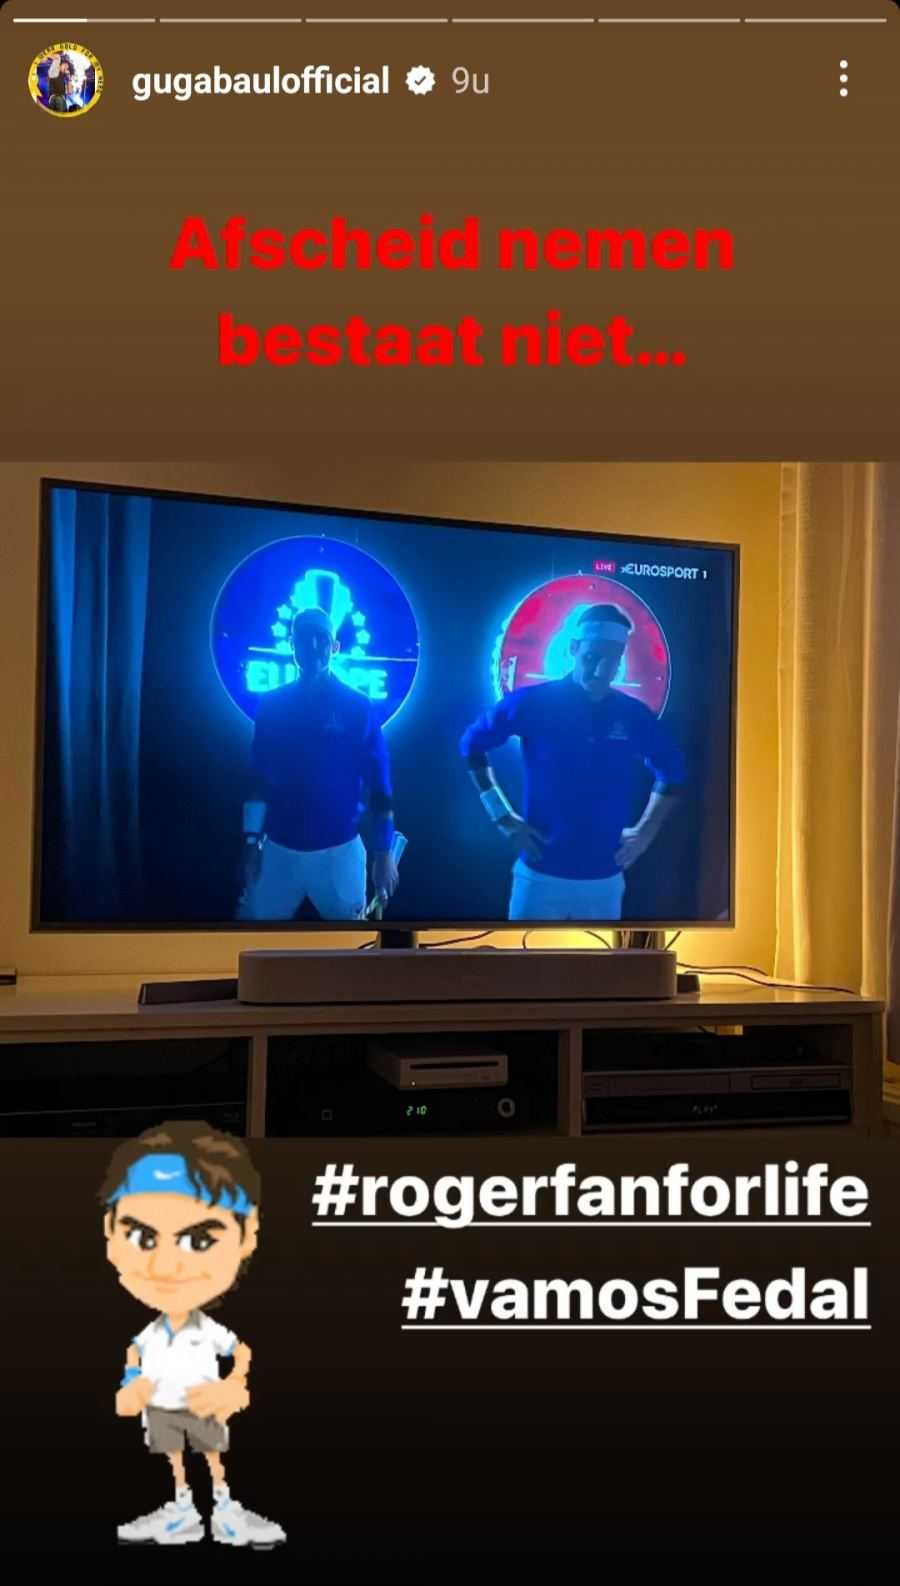 Instagram Guga Baul Federer 4